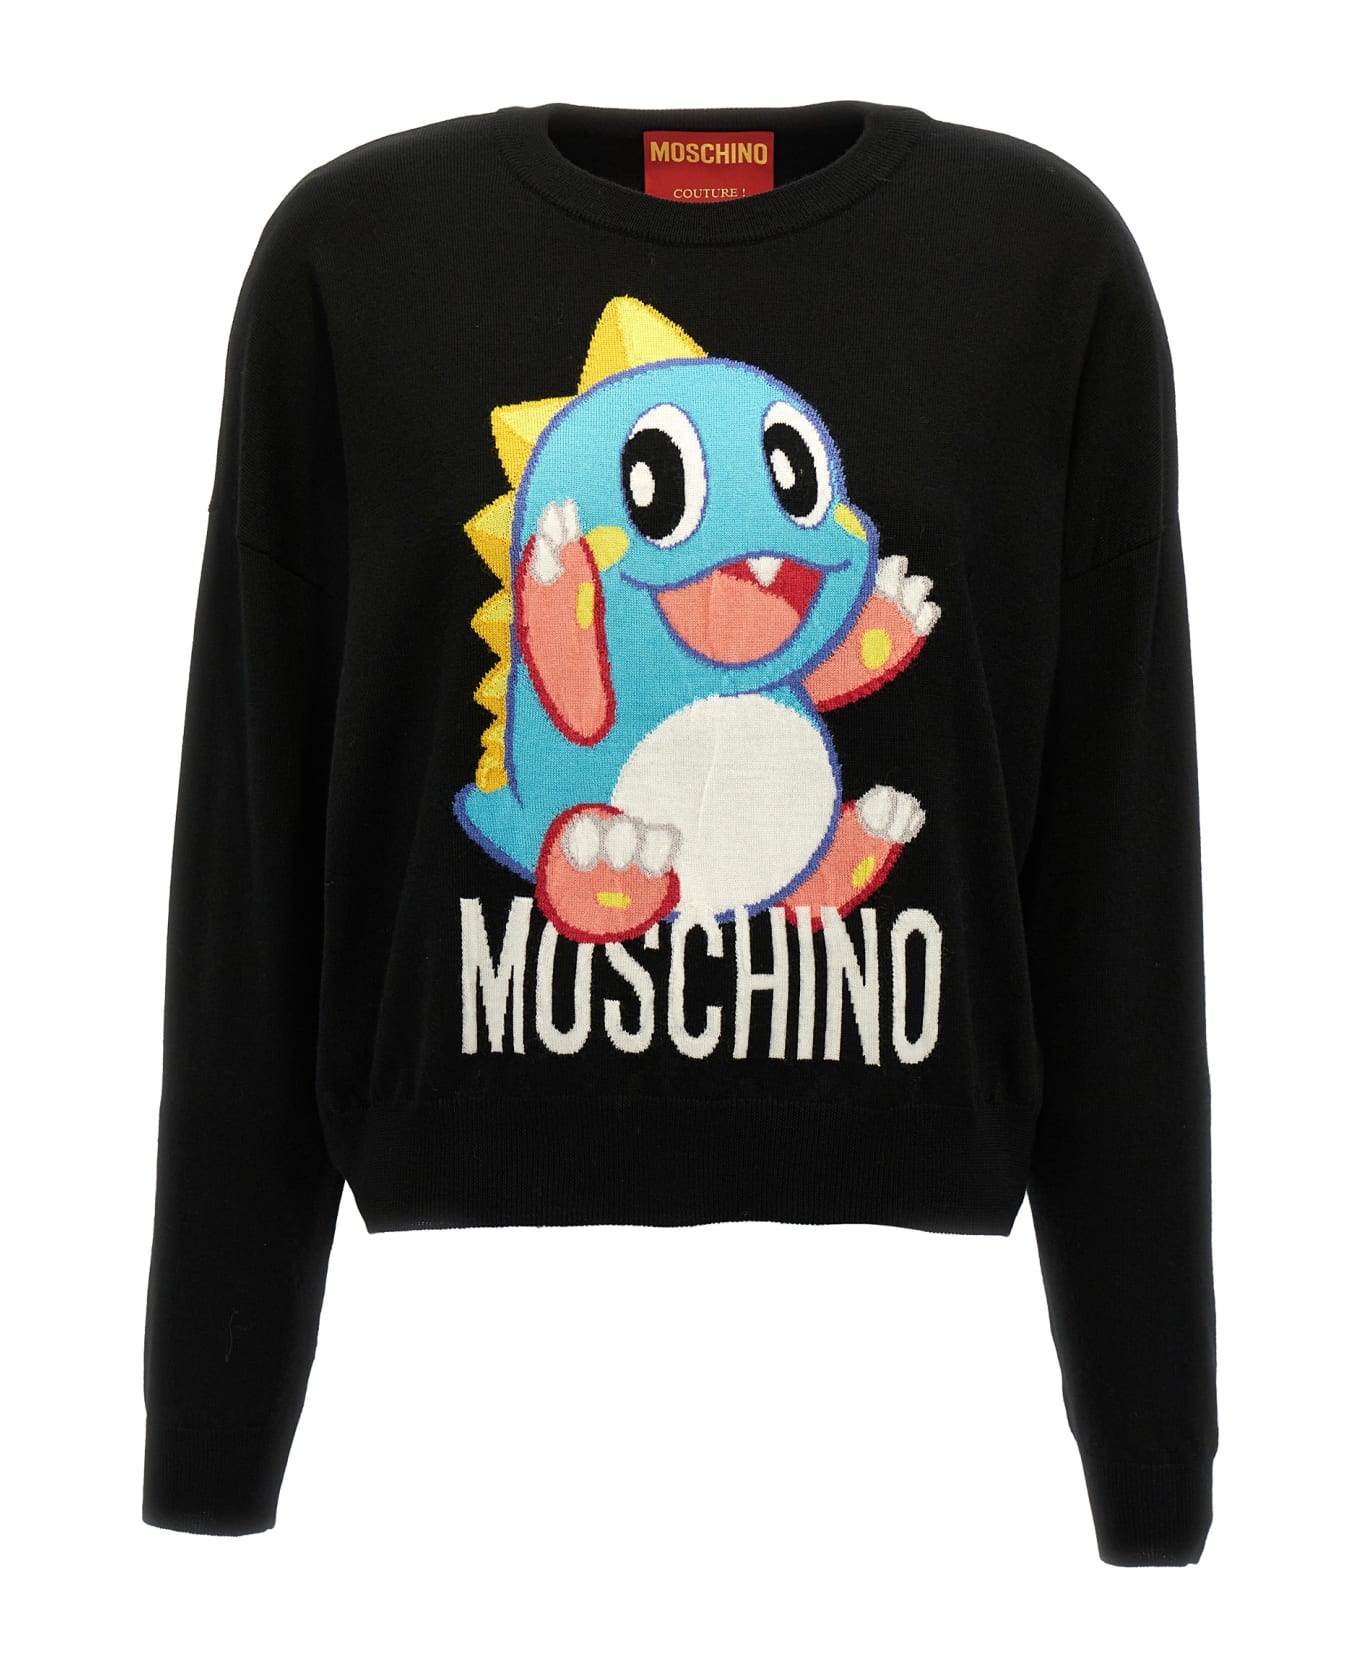 Moschino 'bubble Bobble' Sweater - Black  